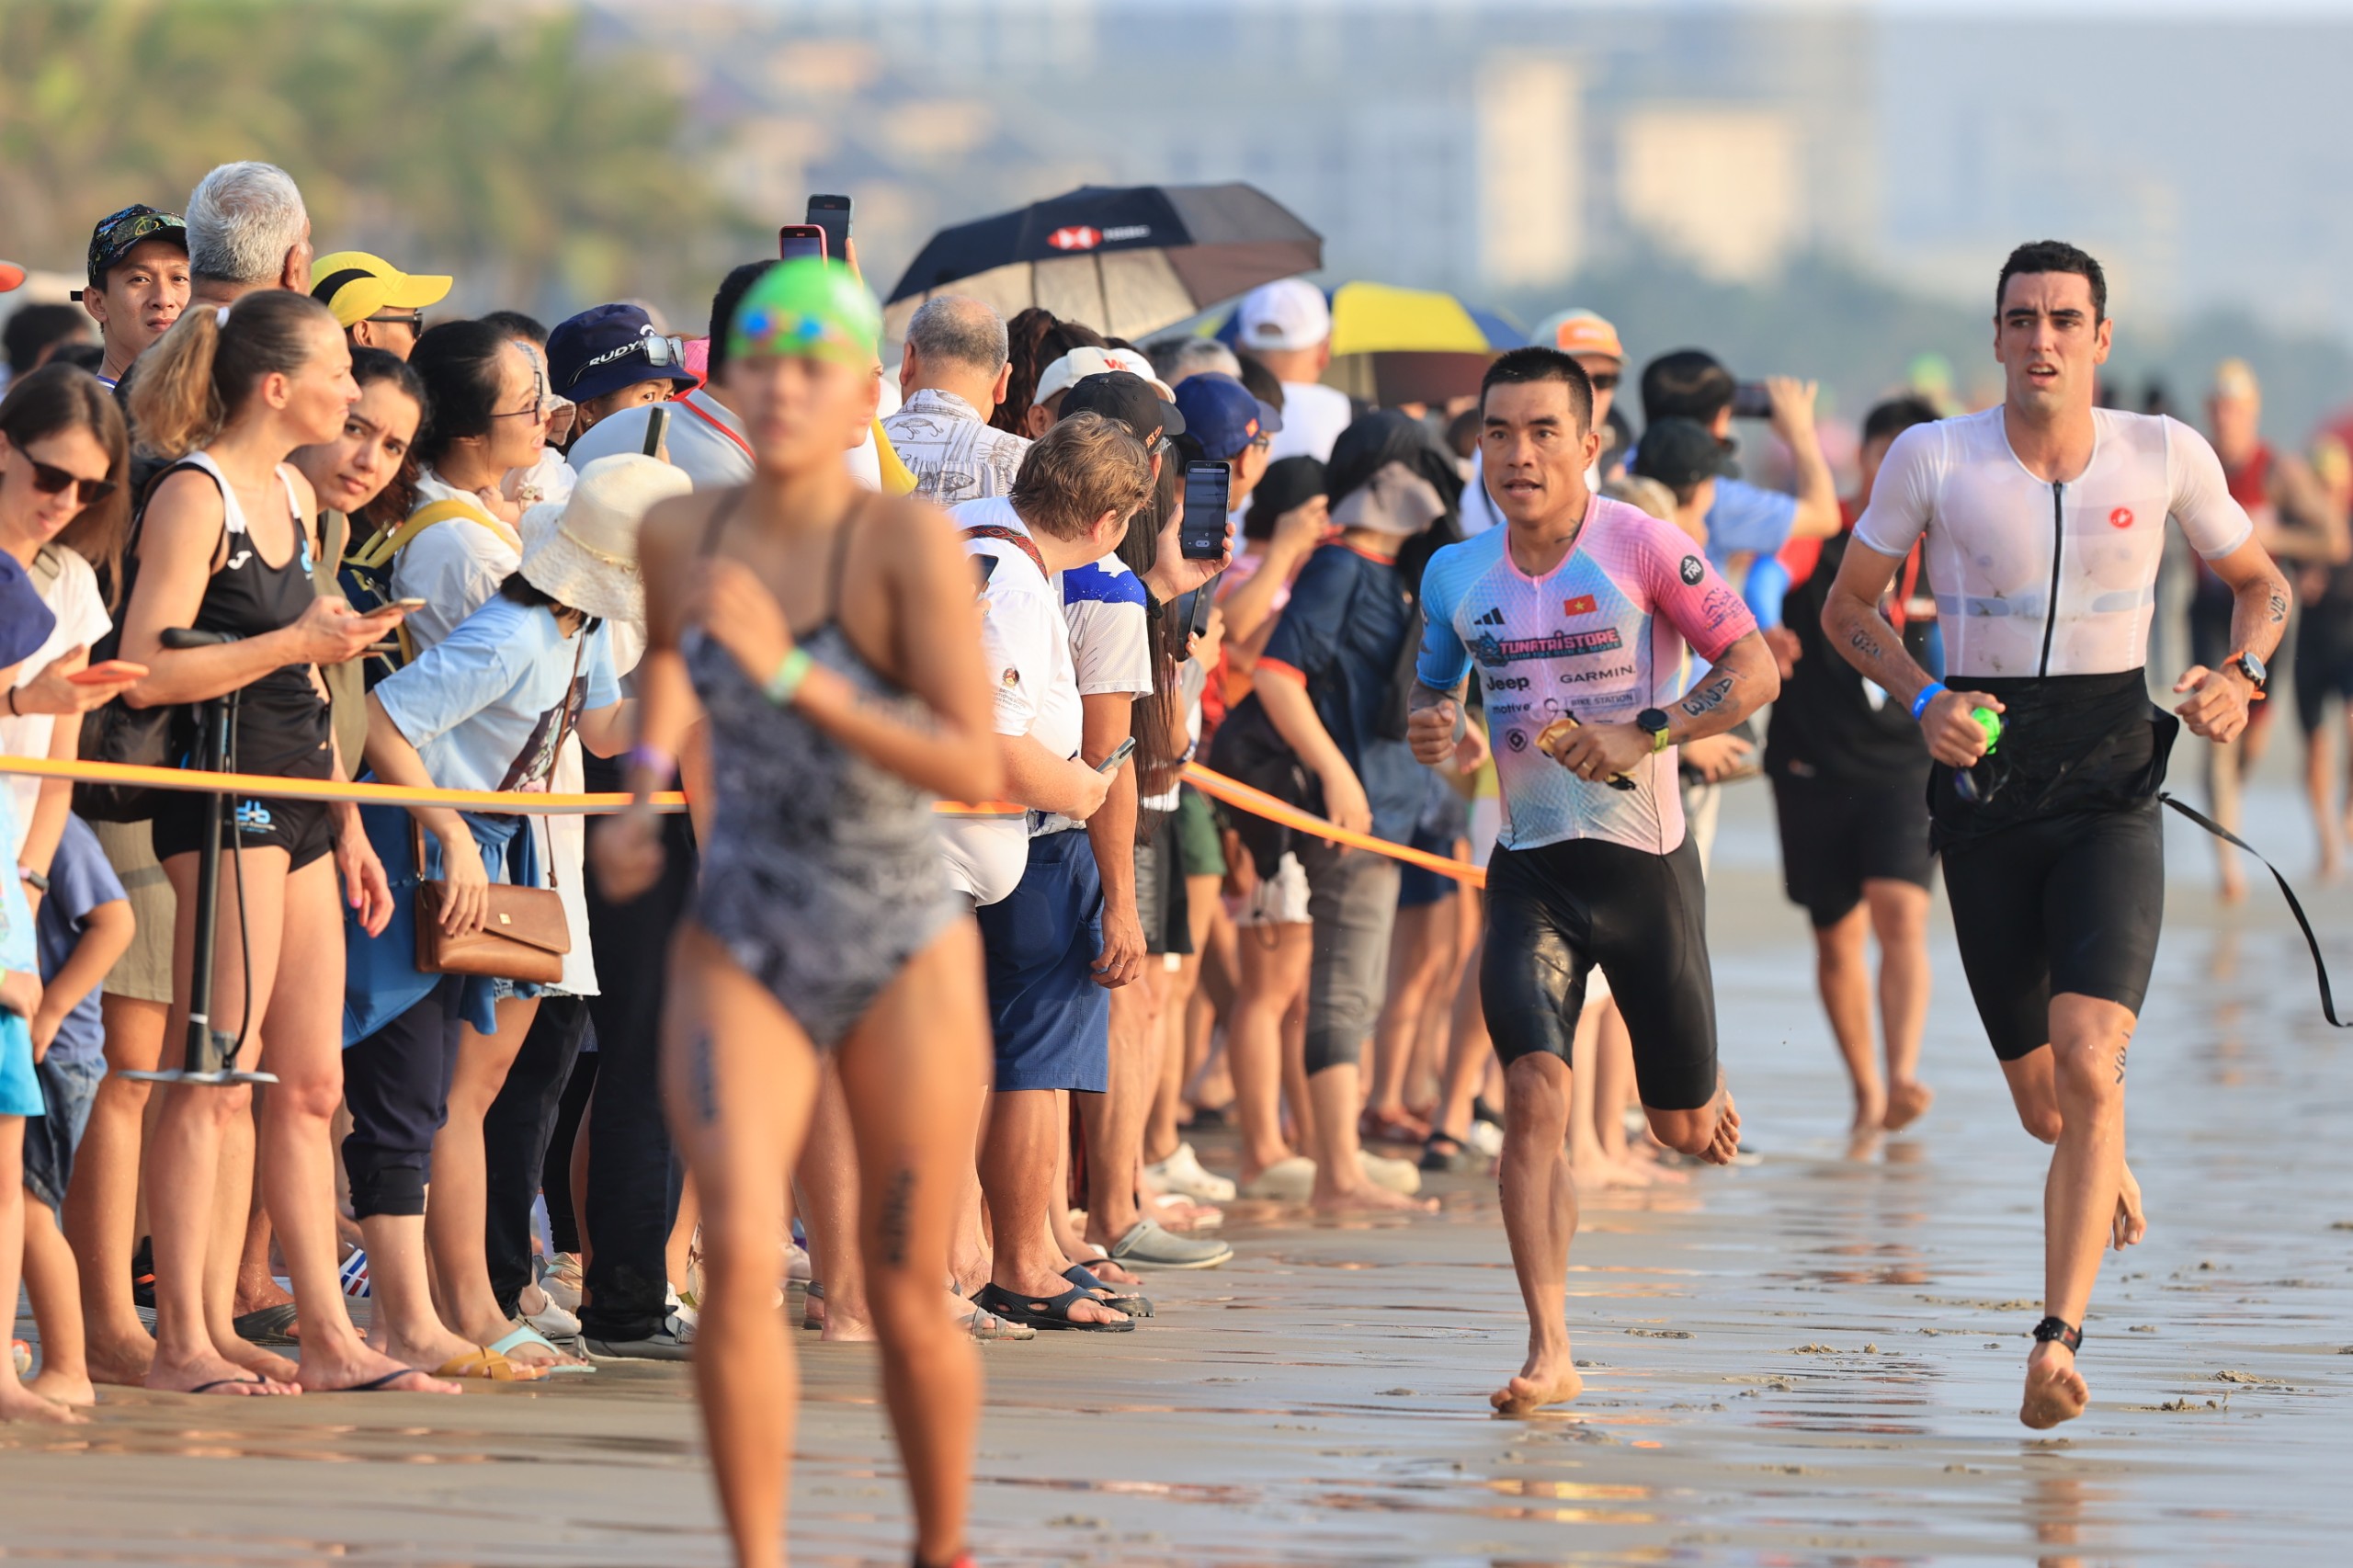 Đường đấu môn chạy trên bãi biển Đà Nẵng